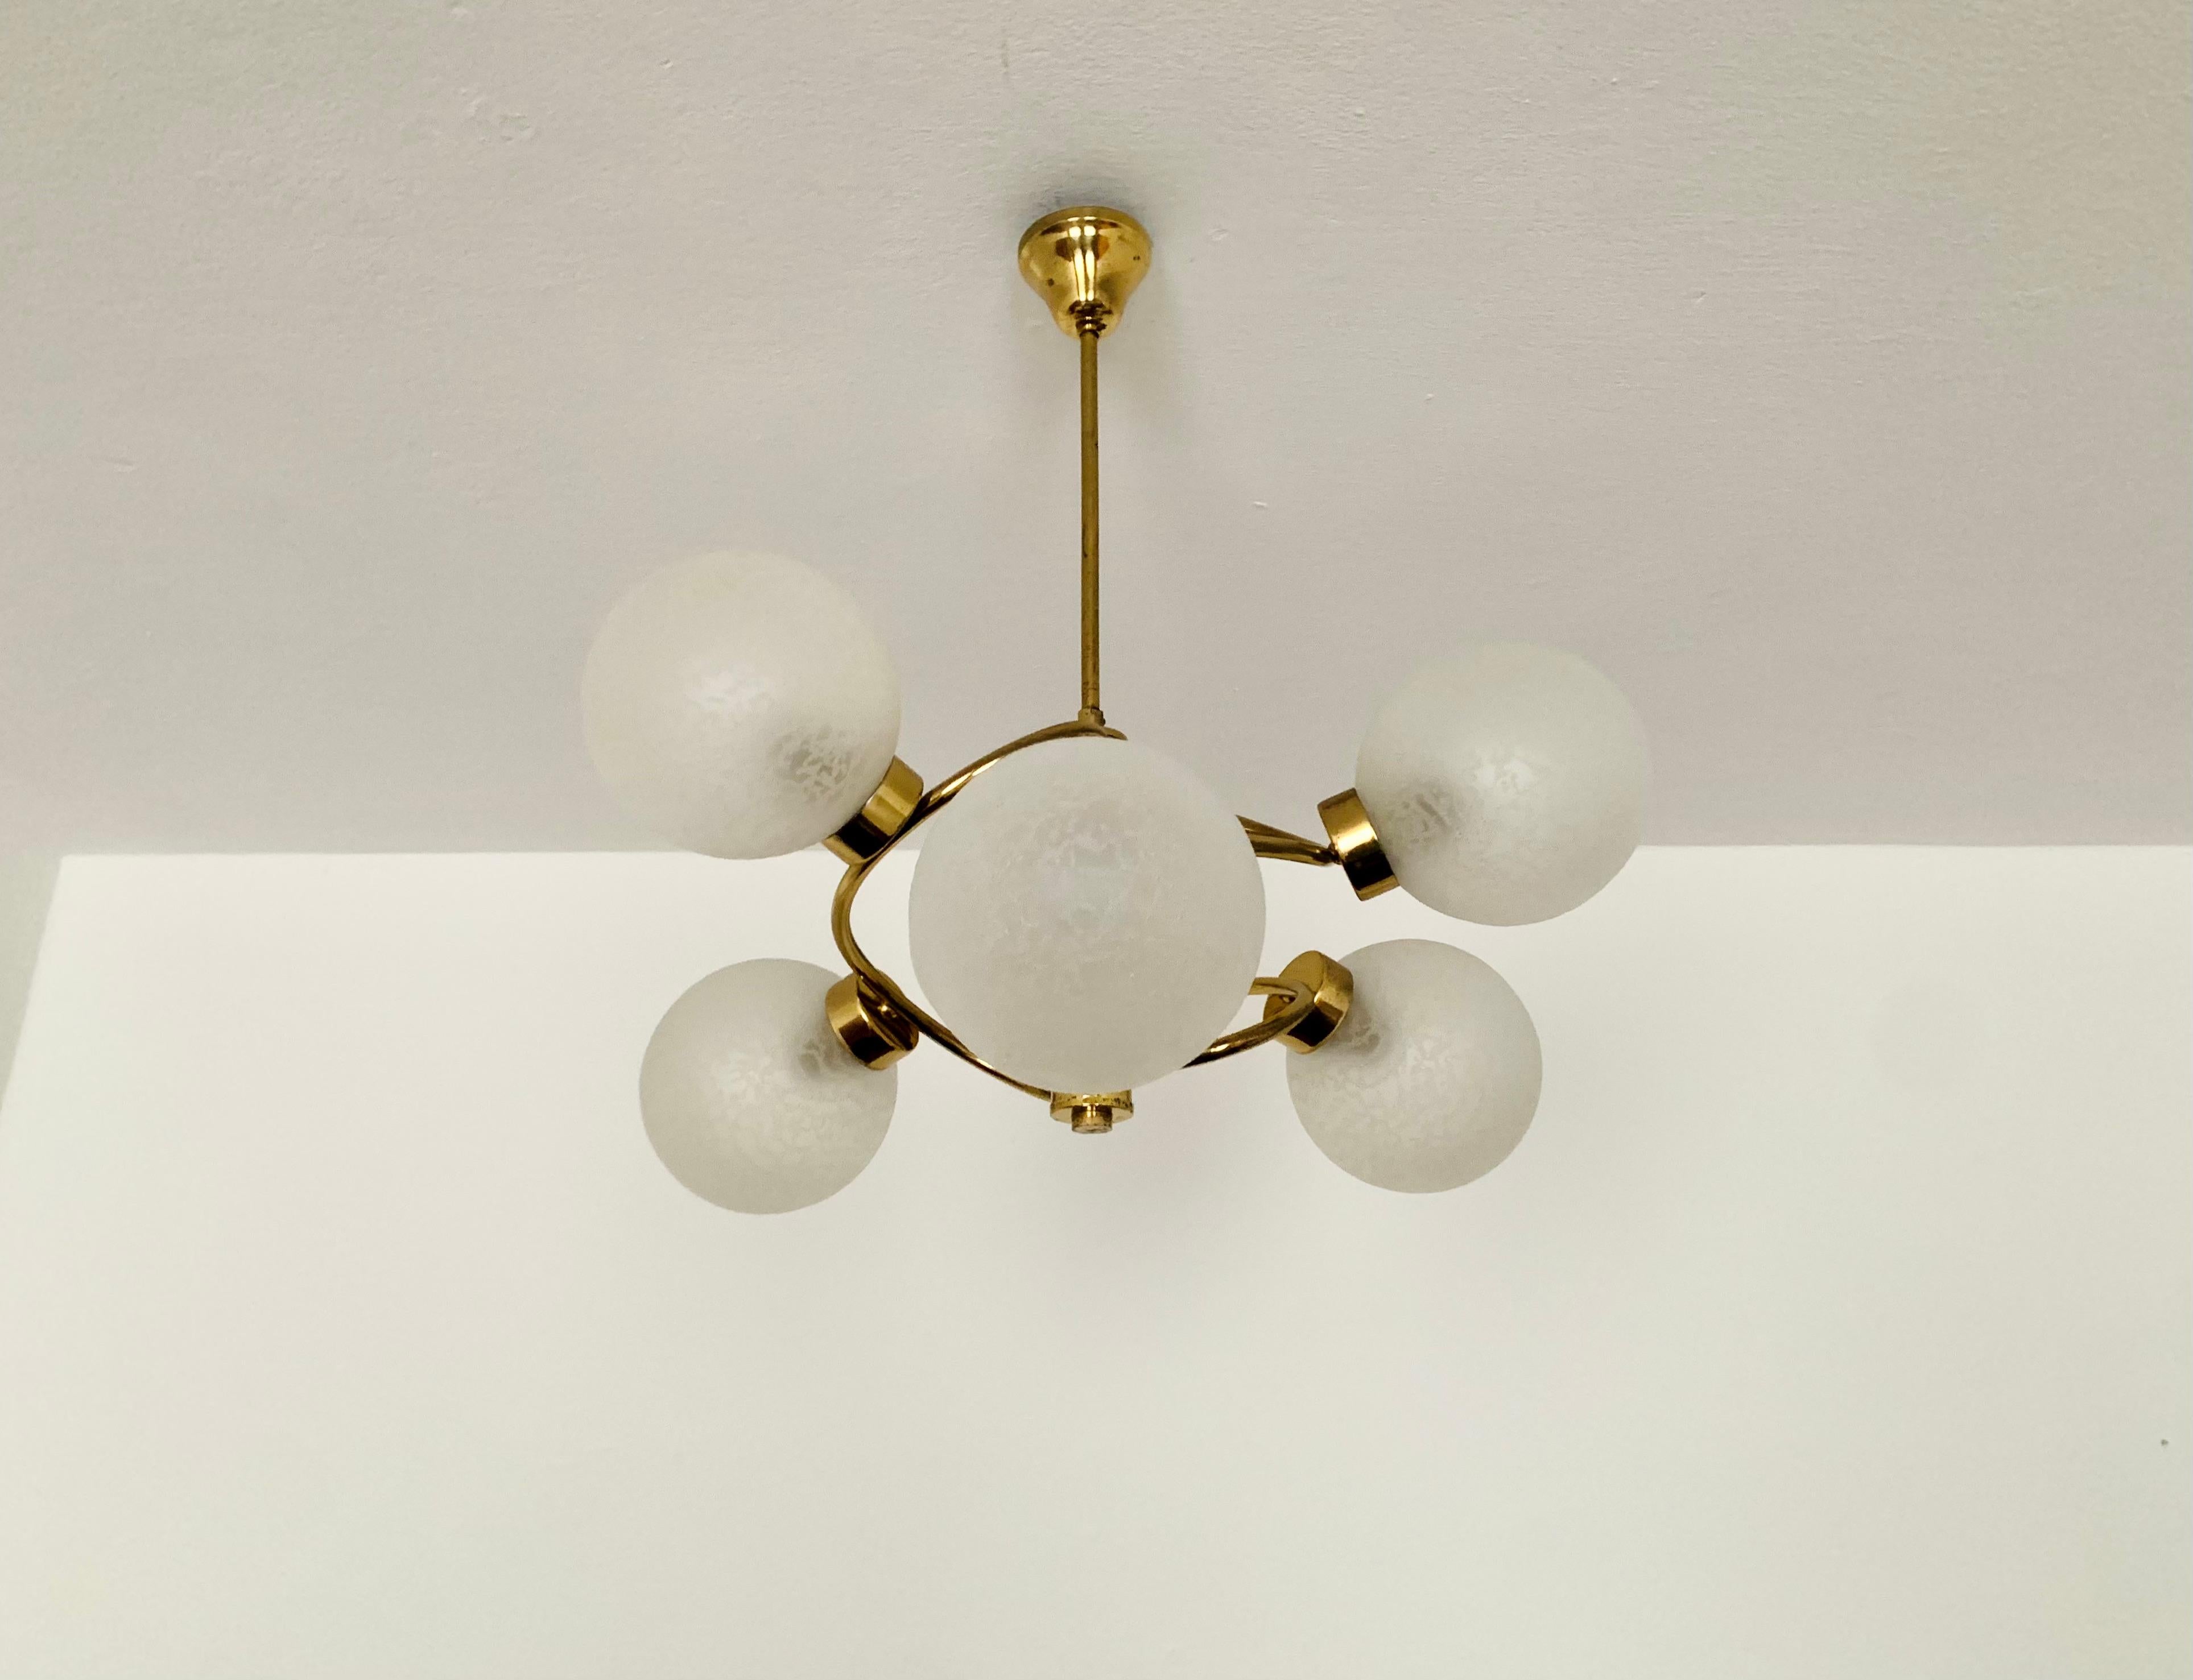 Wunderschöner Sputnik-Kronleuchter aus den 1960er Jahren.
Die 6 Glaslampenschirme mit Struktur verbreiten ein angenehmes Licht.
Die Lampe ist sehr hochwertig verarbeitet.
Sehr modernes Design mit einem fantastischen Look.

Bedingung:

Sehr guter